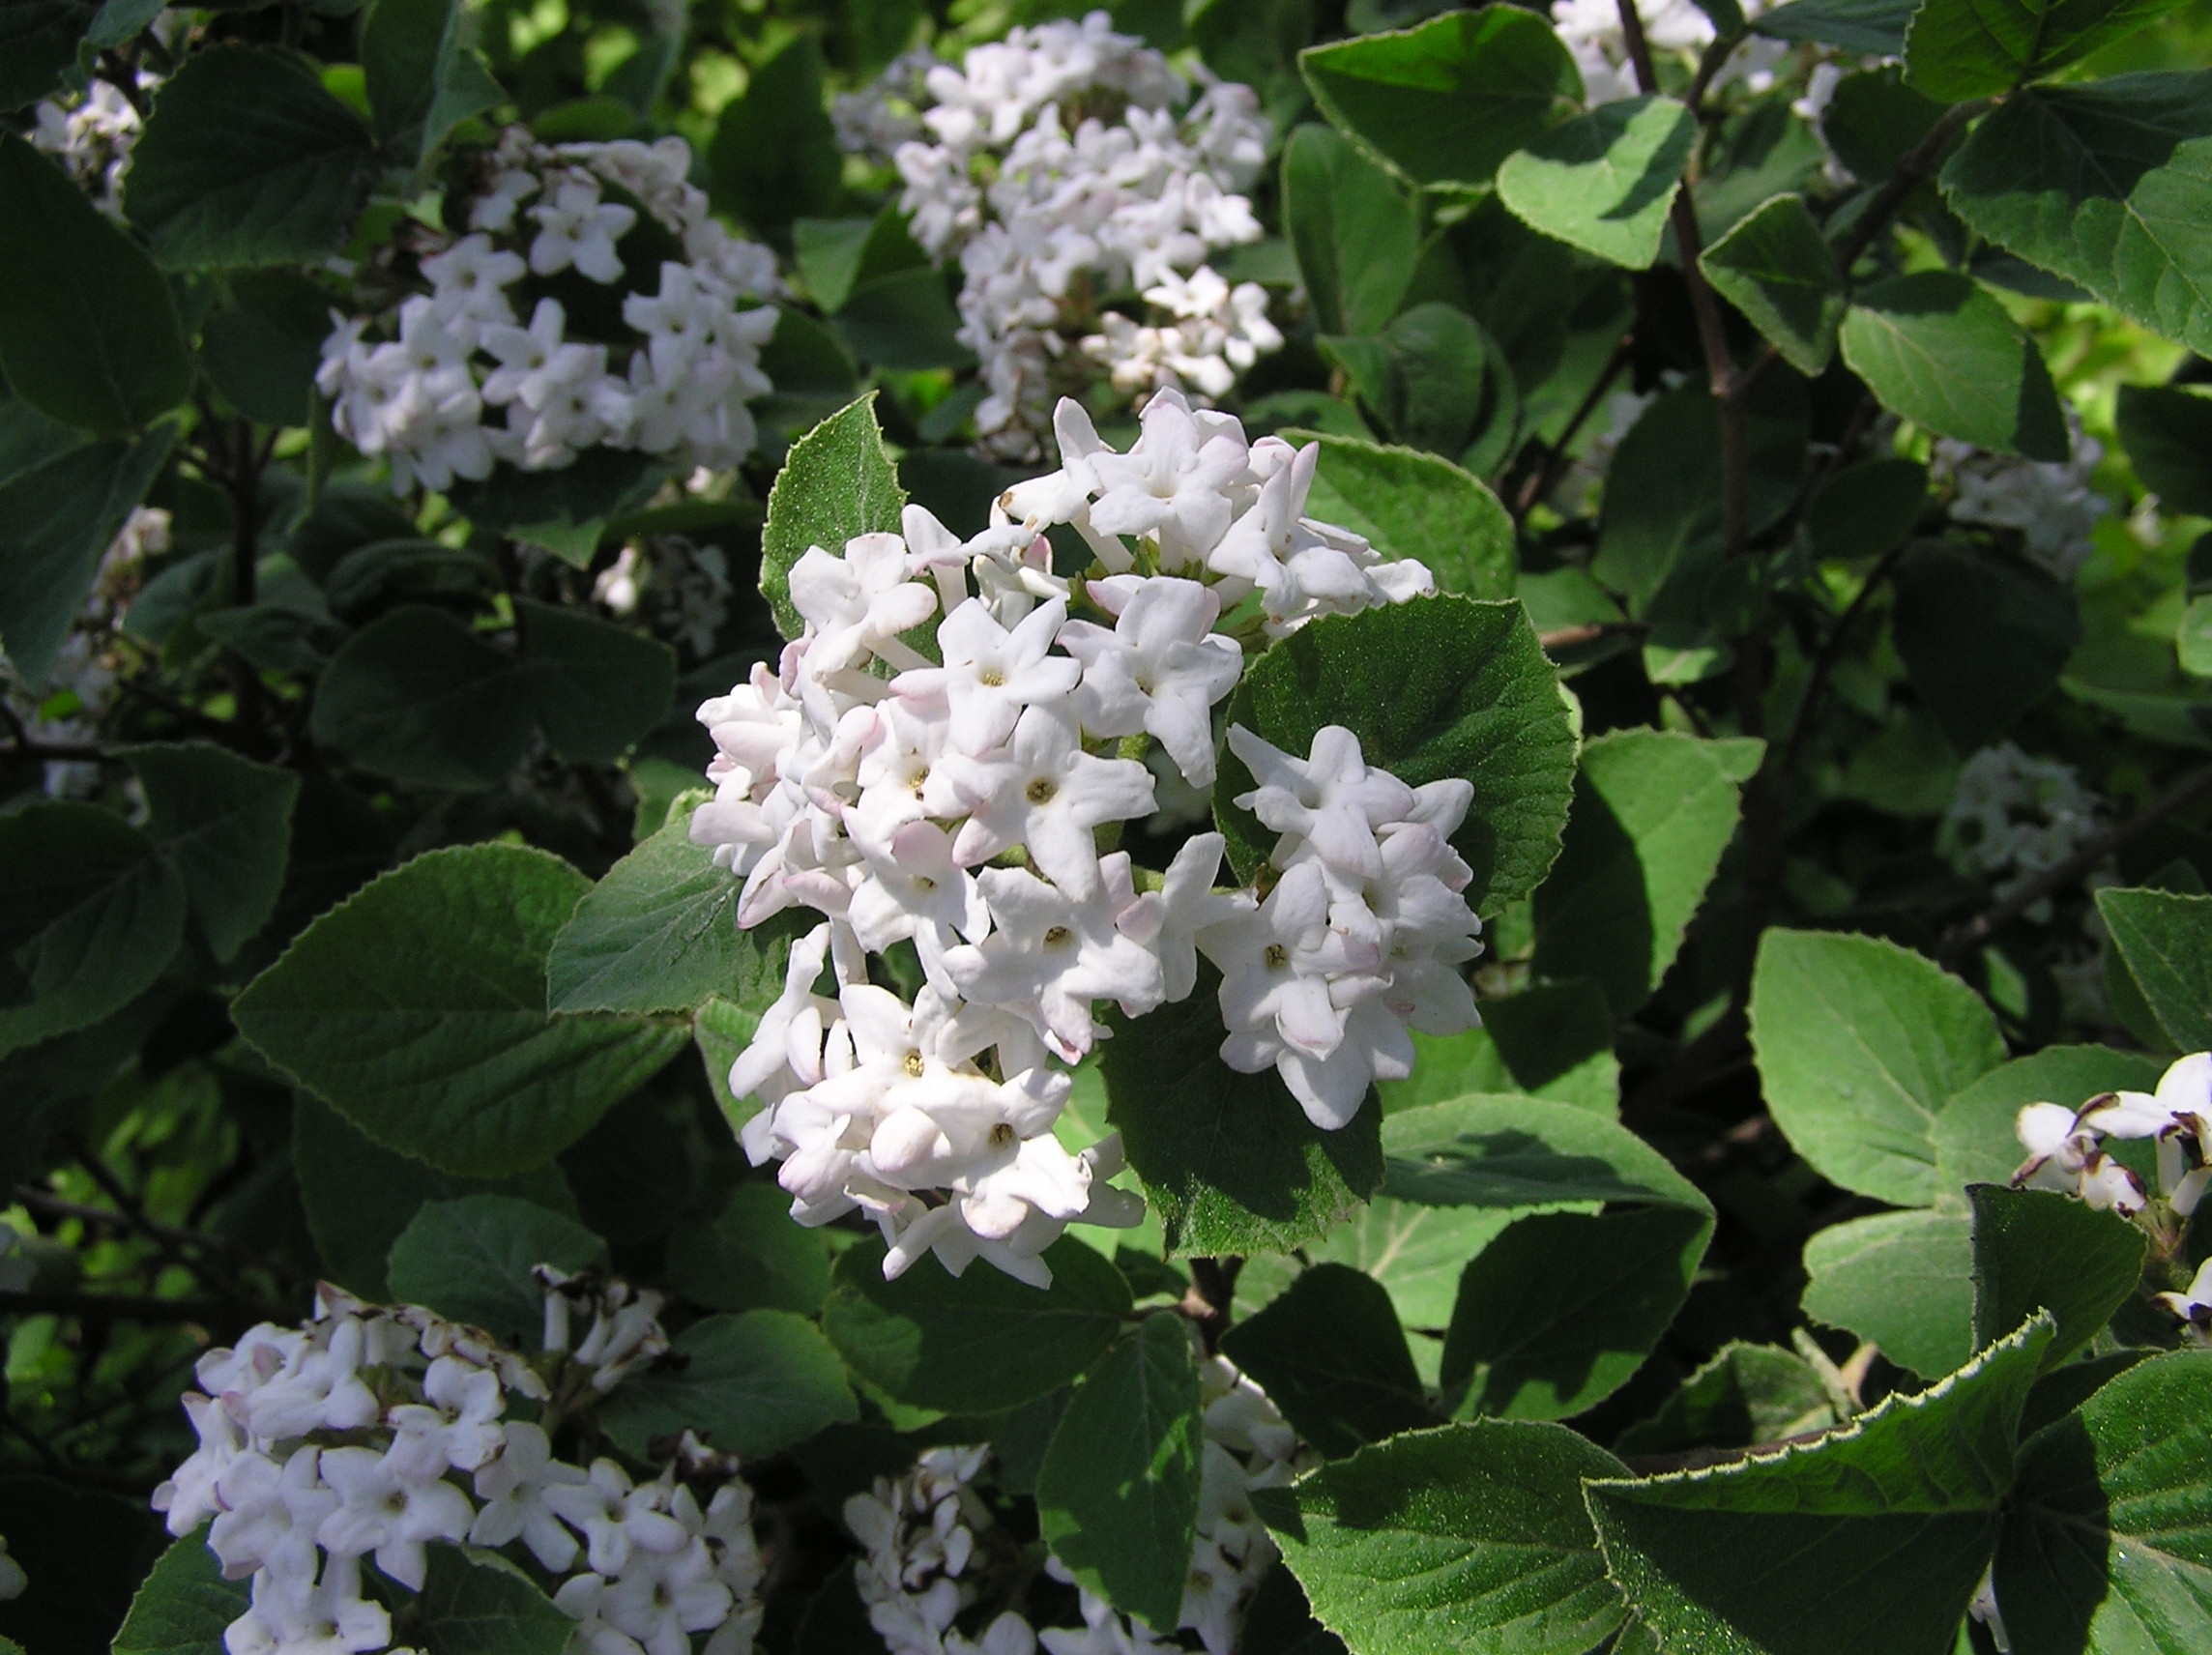 Judd hybrid viburnum (Viburnum x juddii )